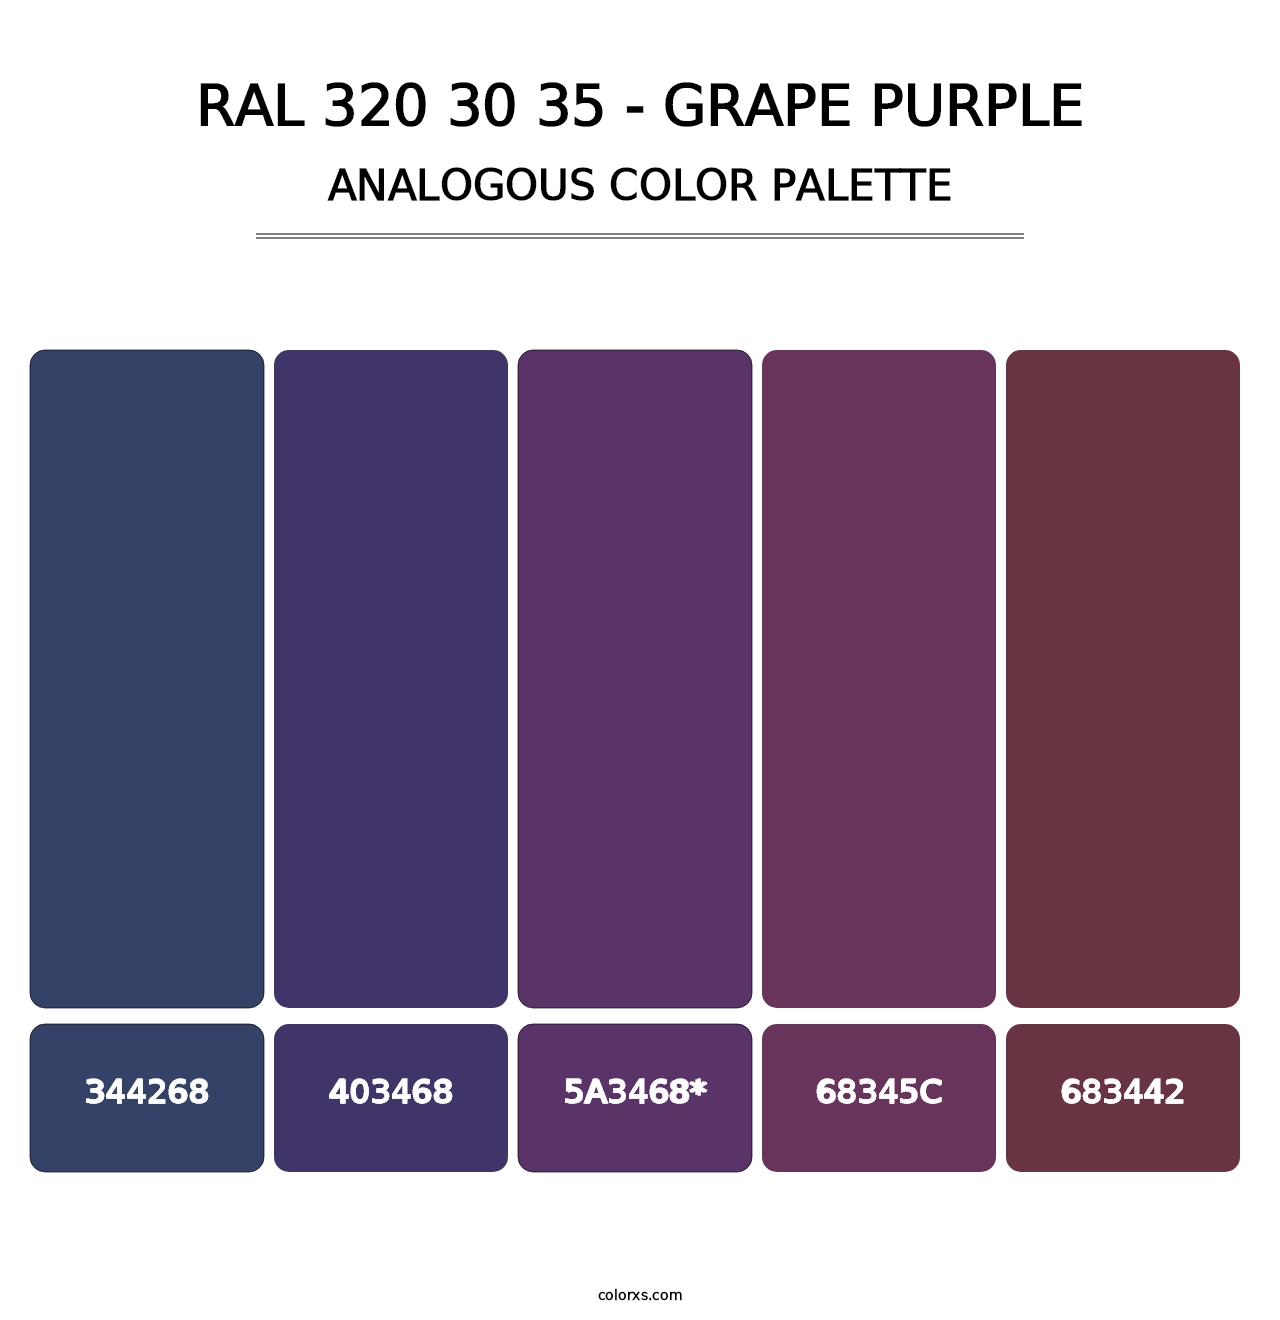 RAL 320 30 35 - Grape Purple - Analogous Color Palette